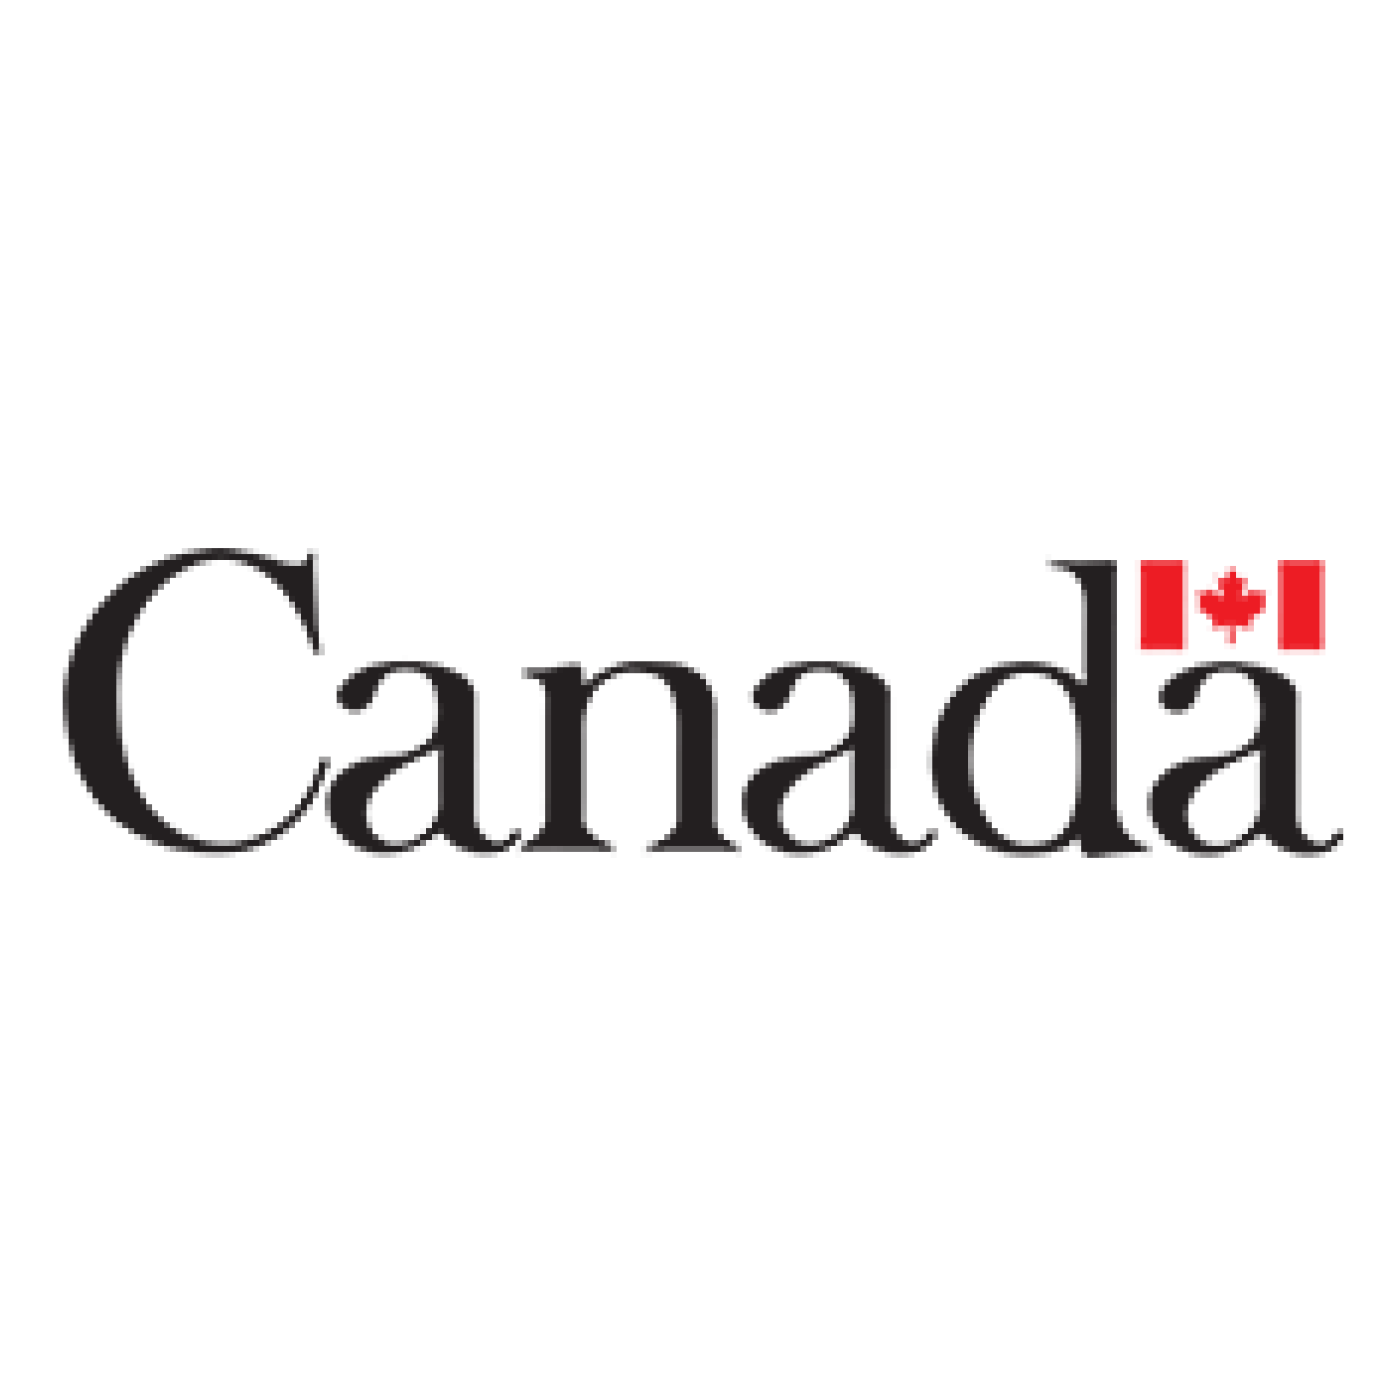 Global Affairs Canada (GAC) logo